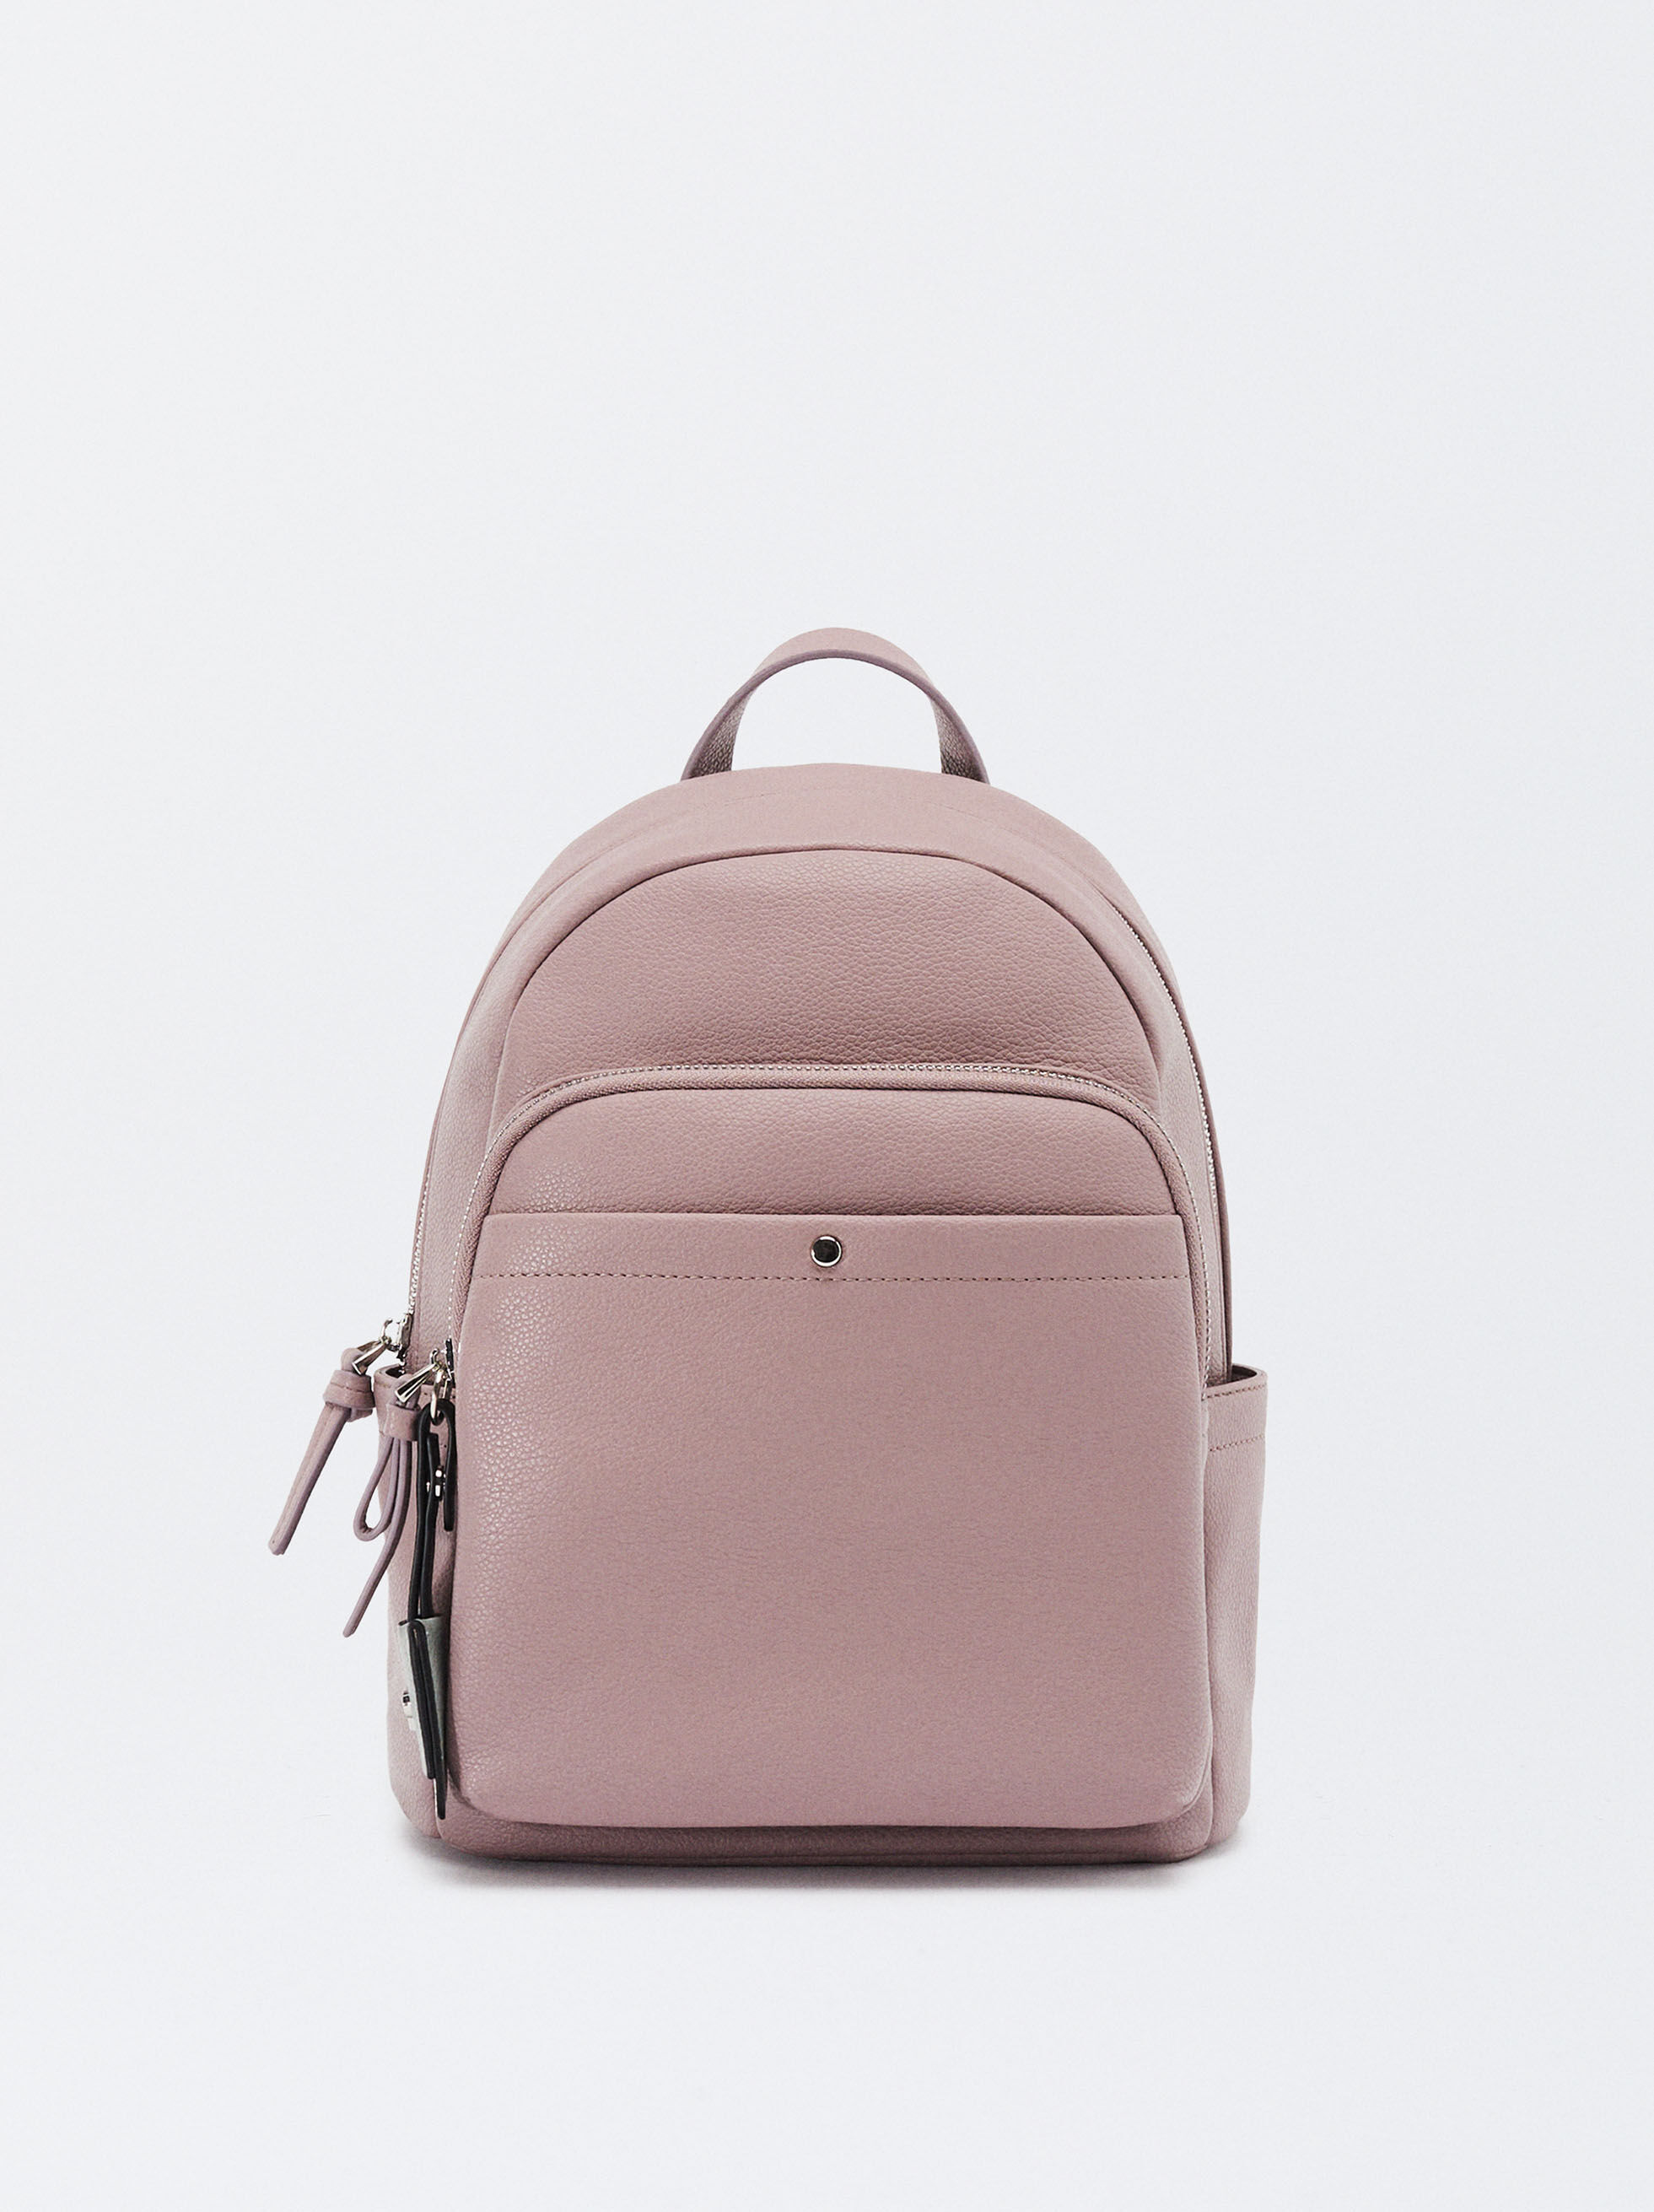 Purple Bags | COACH® Outlet